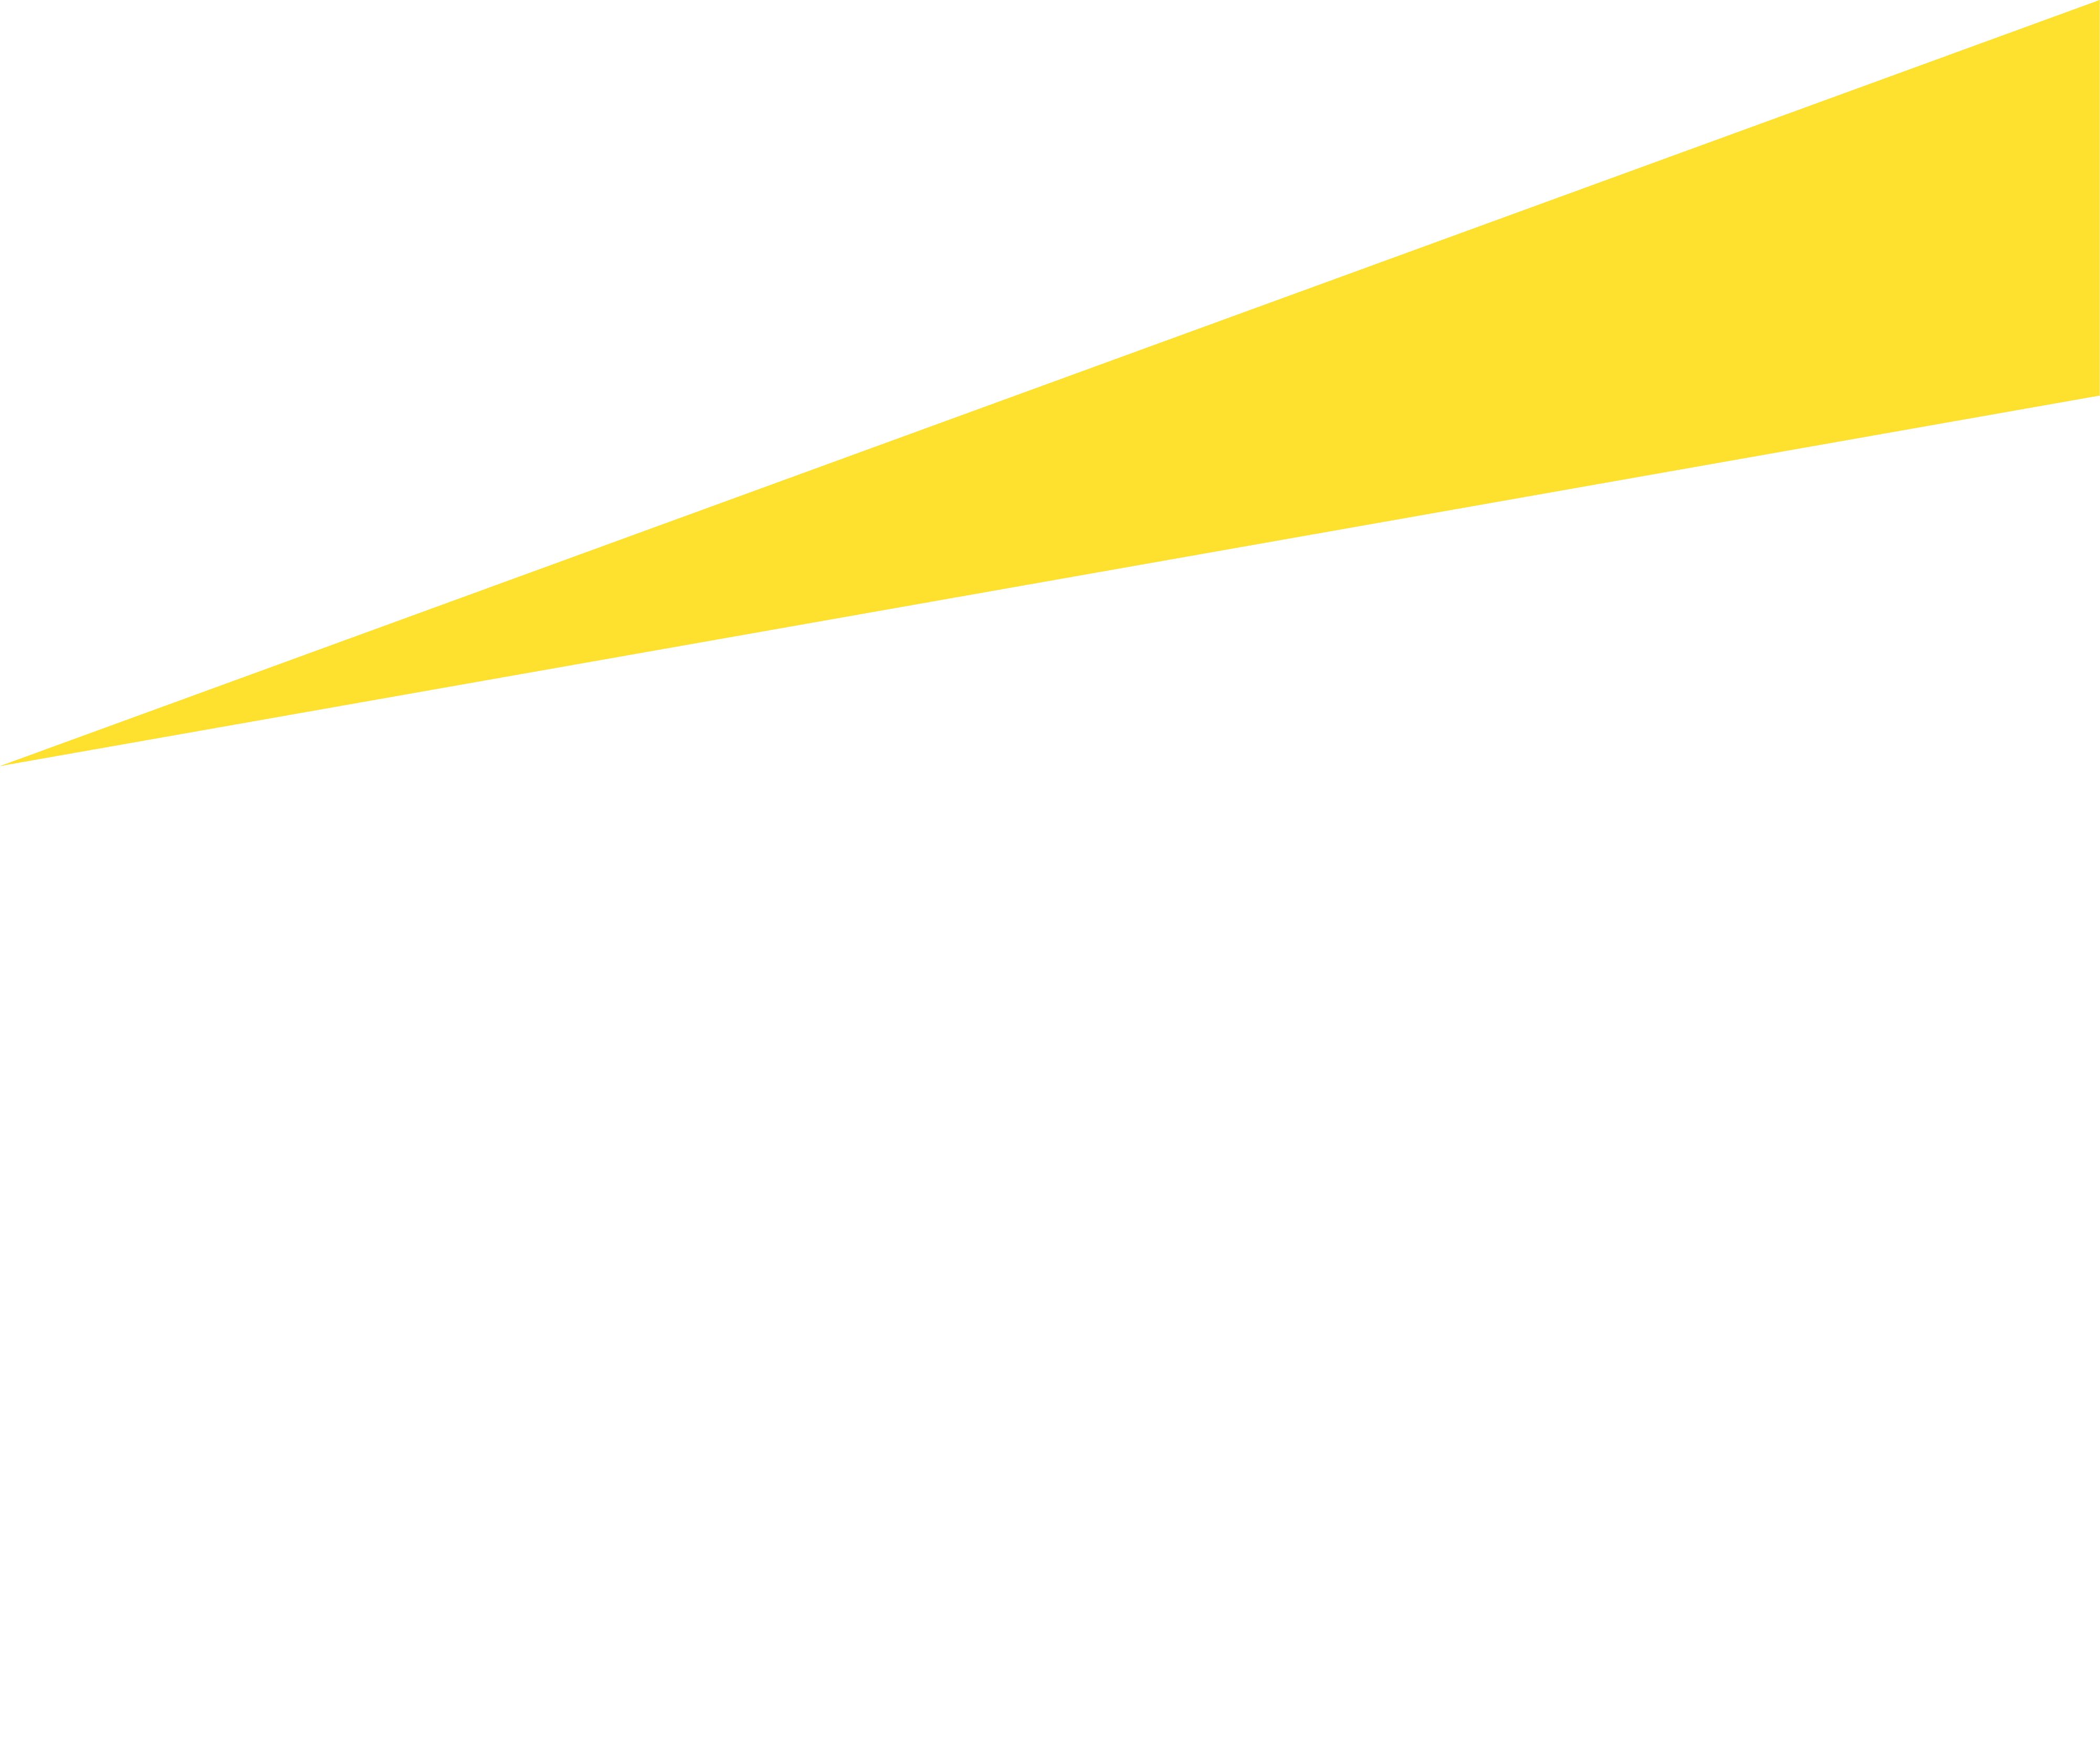 EY_logo_2019.svg